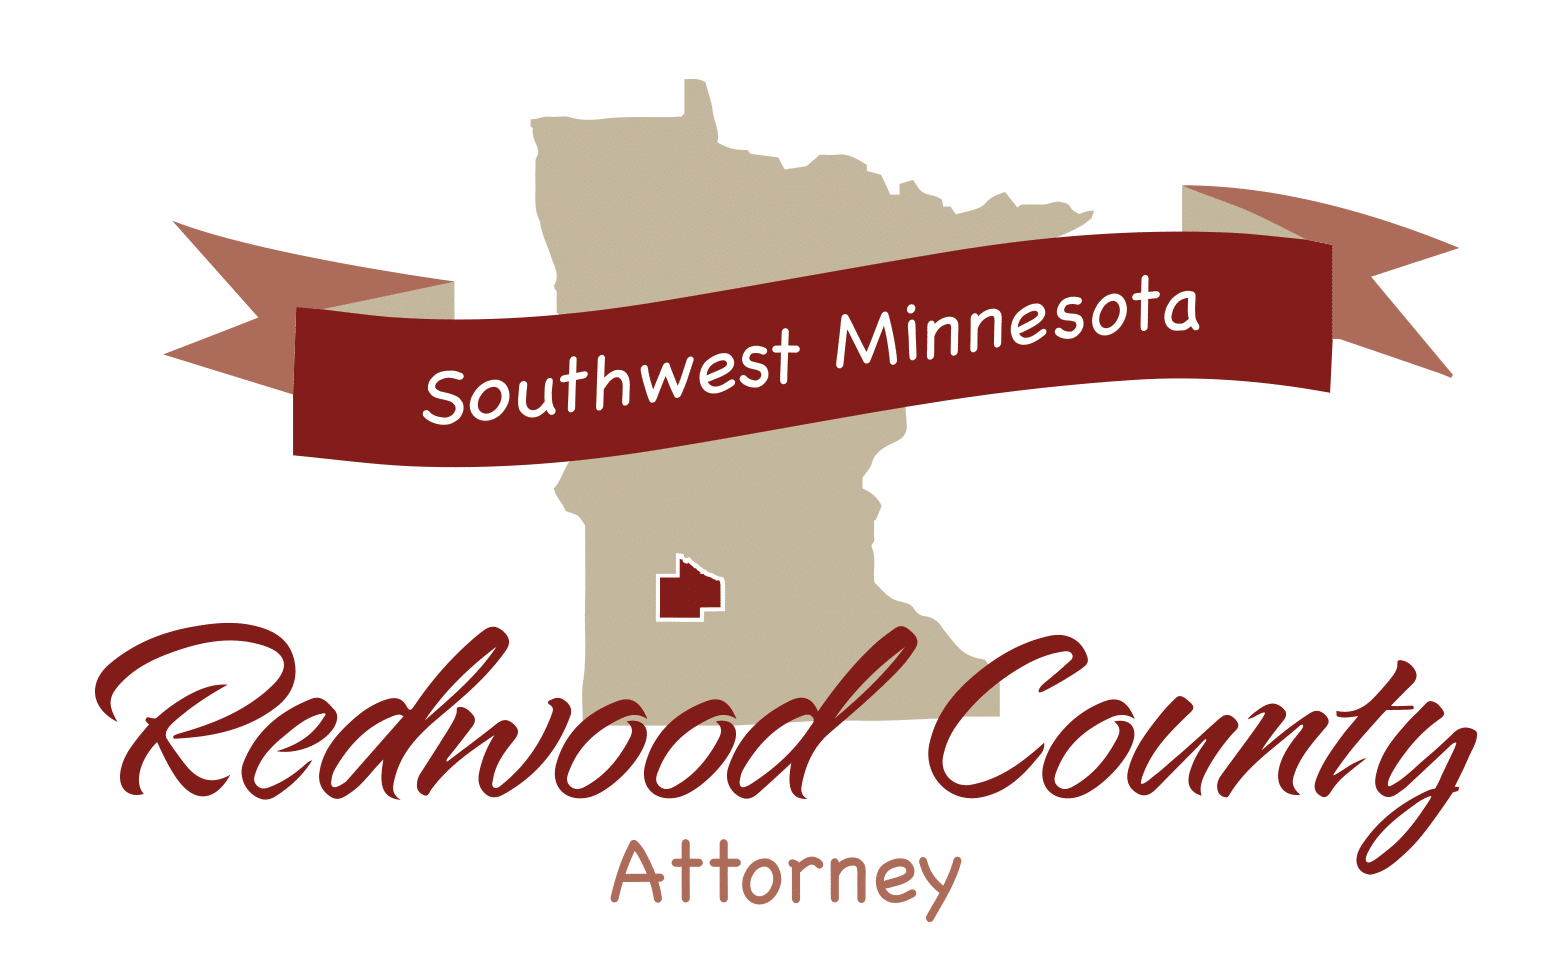 RedwoodCounty logo Attorney